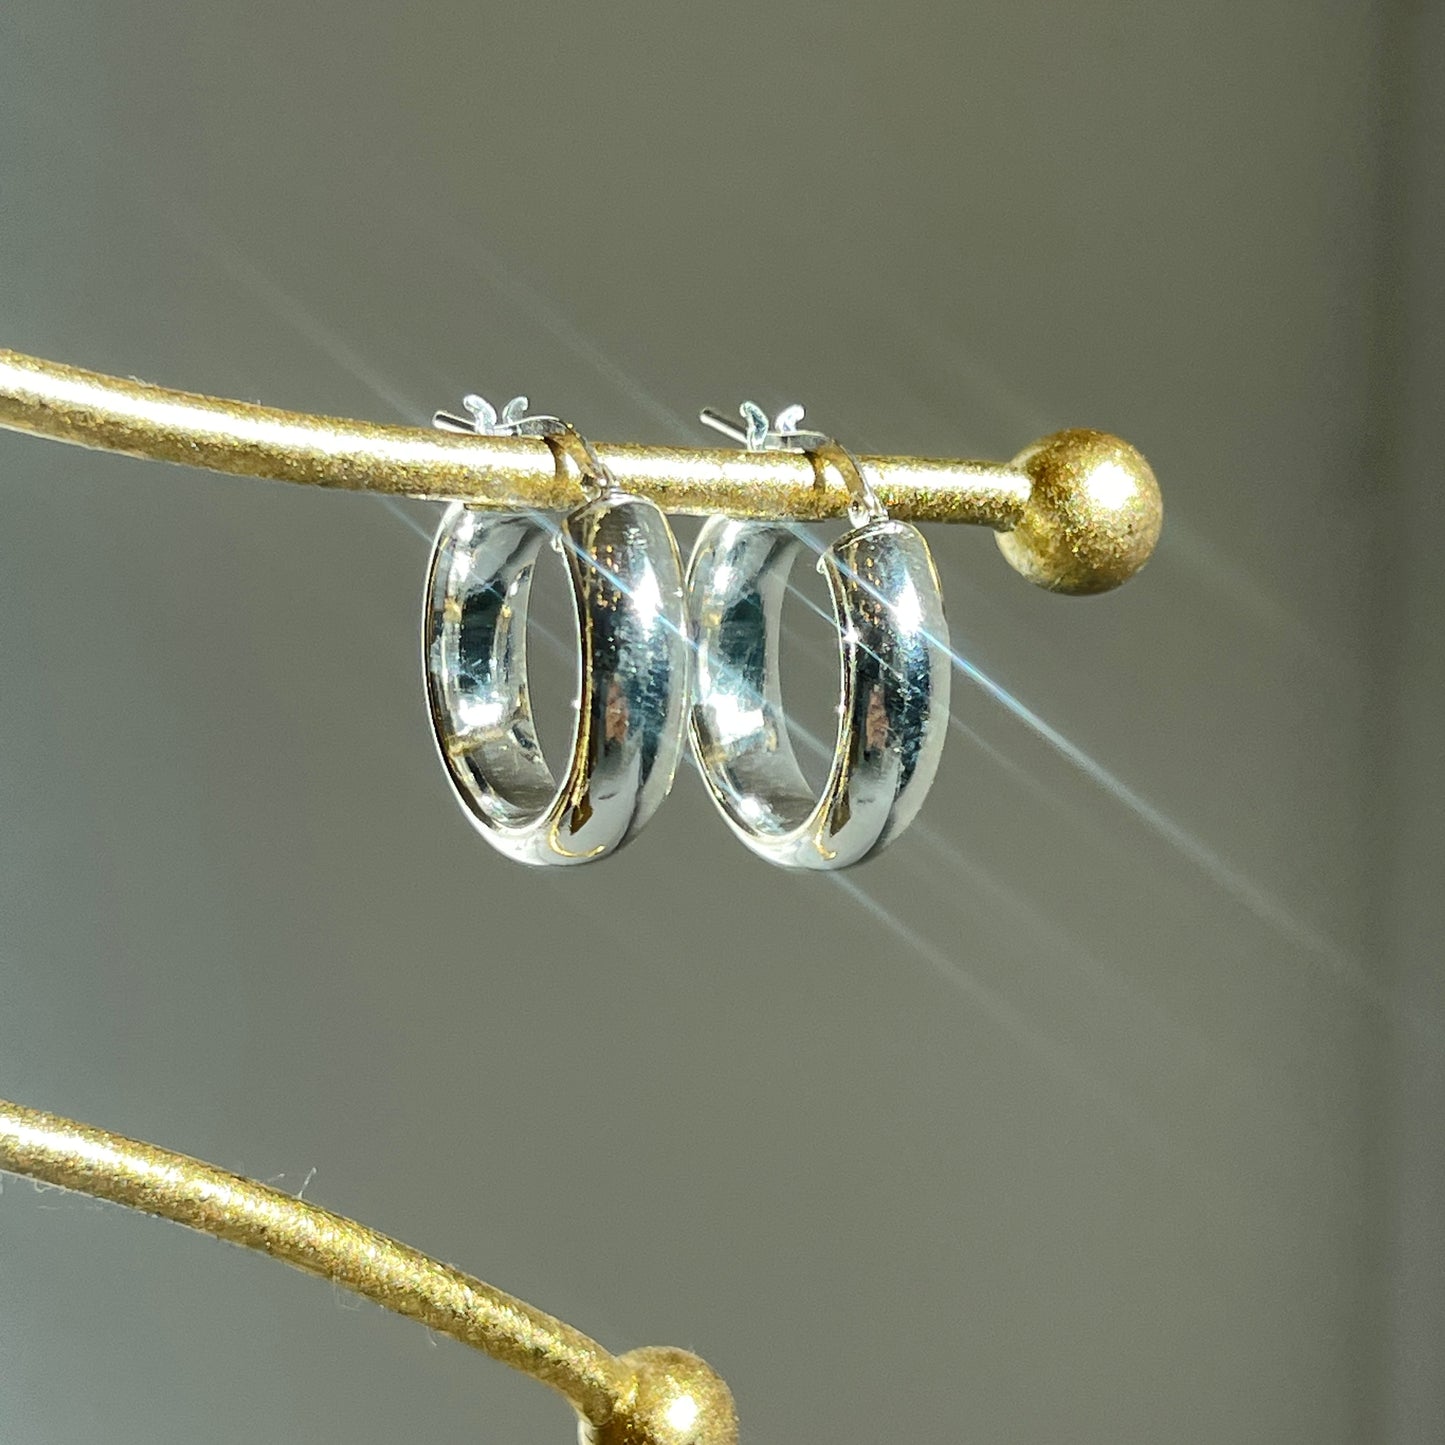 Sterling Silver Half-Round Tube Hoop Earrings 23mm